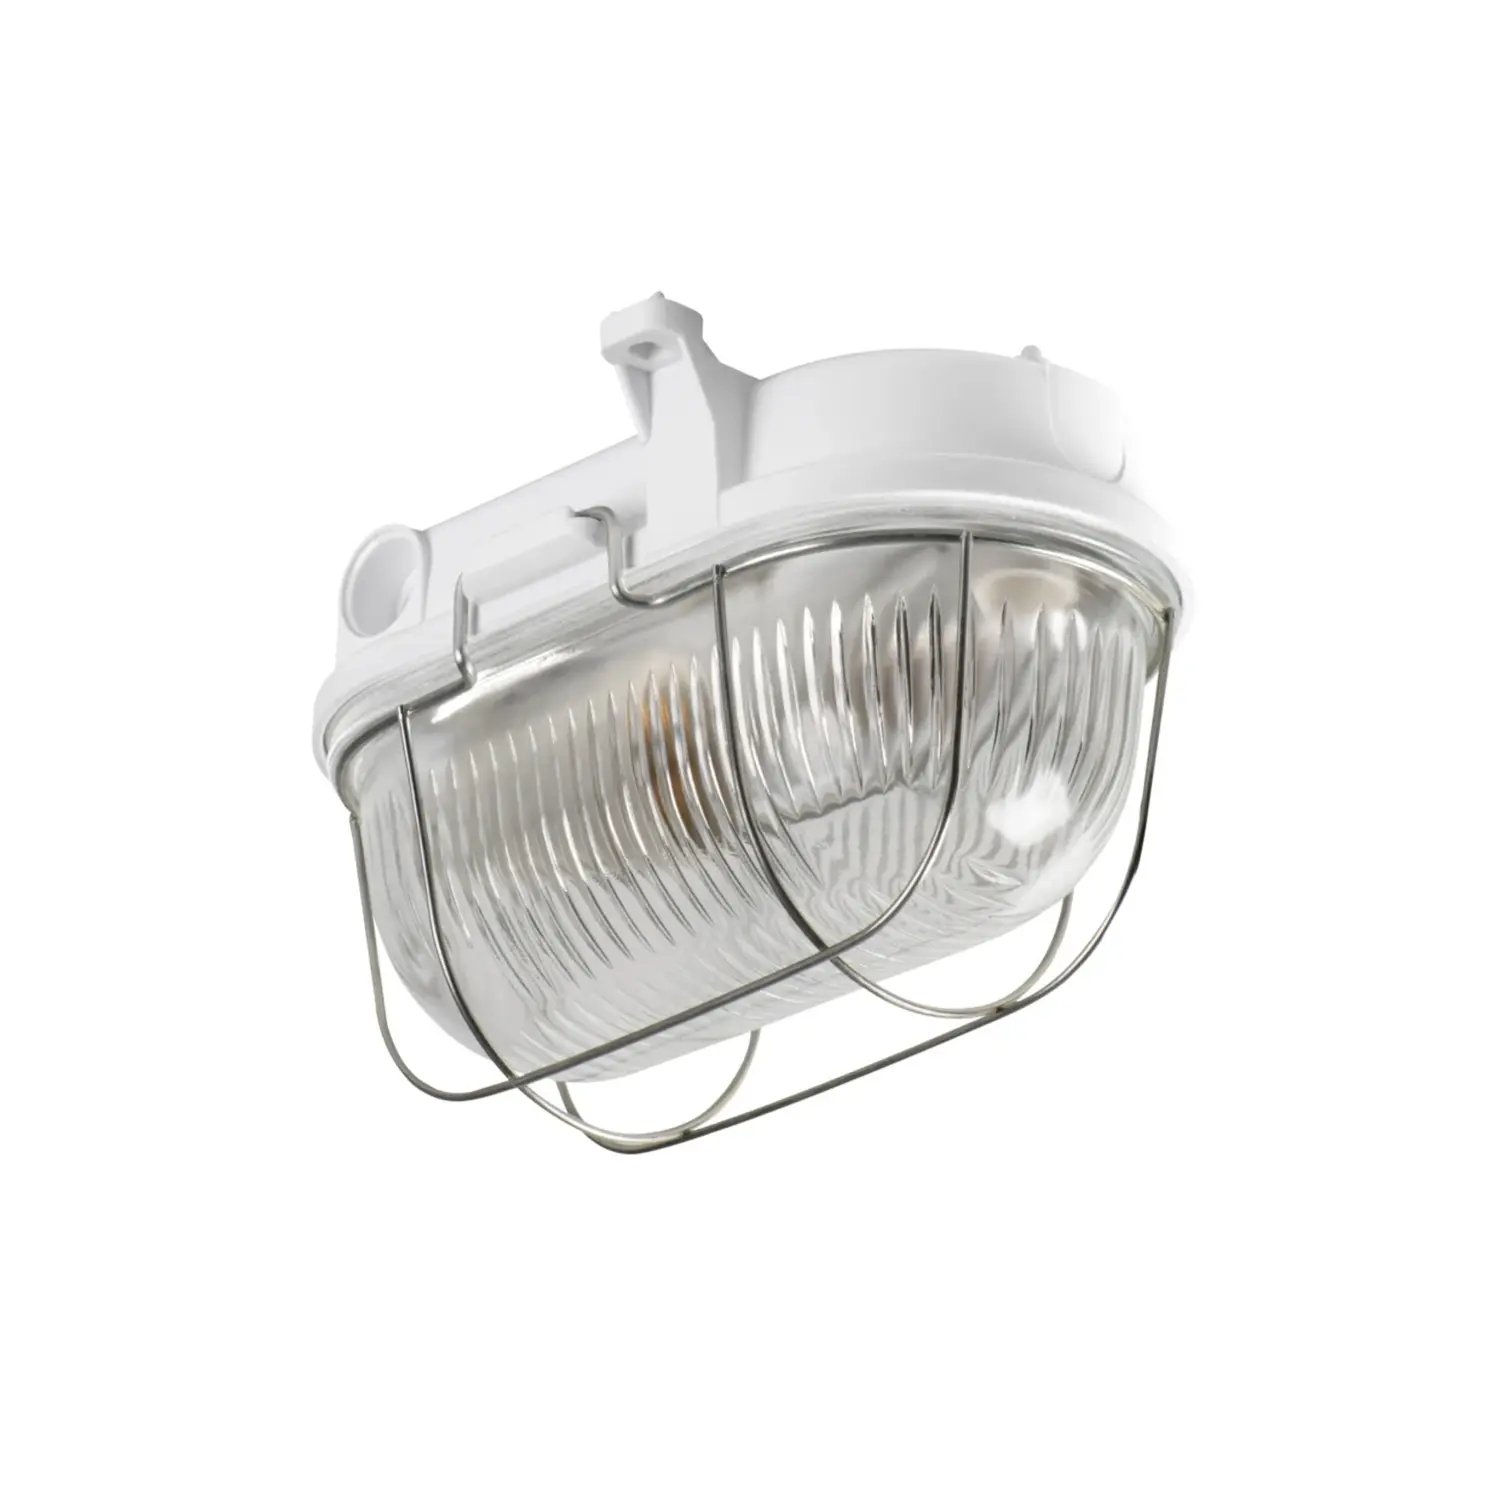 immagine del prodotto plafoniera tartaruga lampada e27 190 mm retina metallo